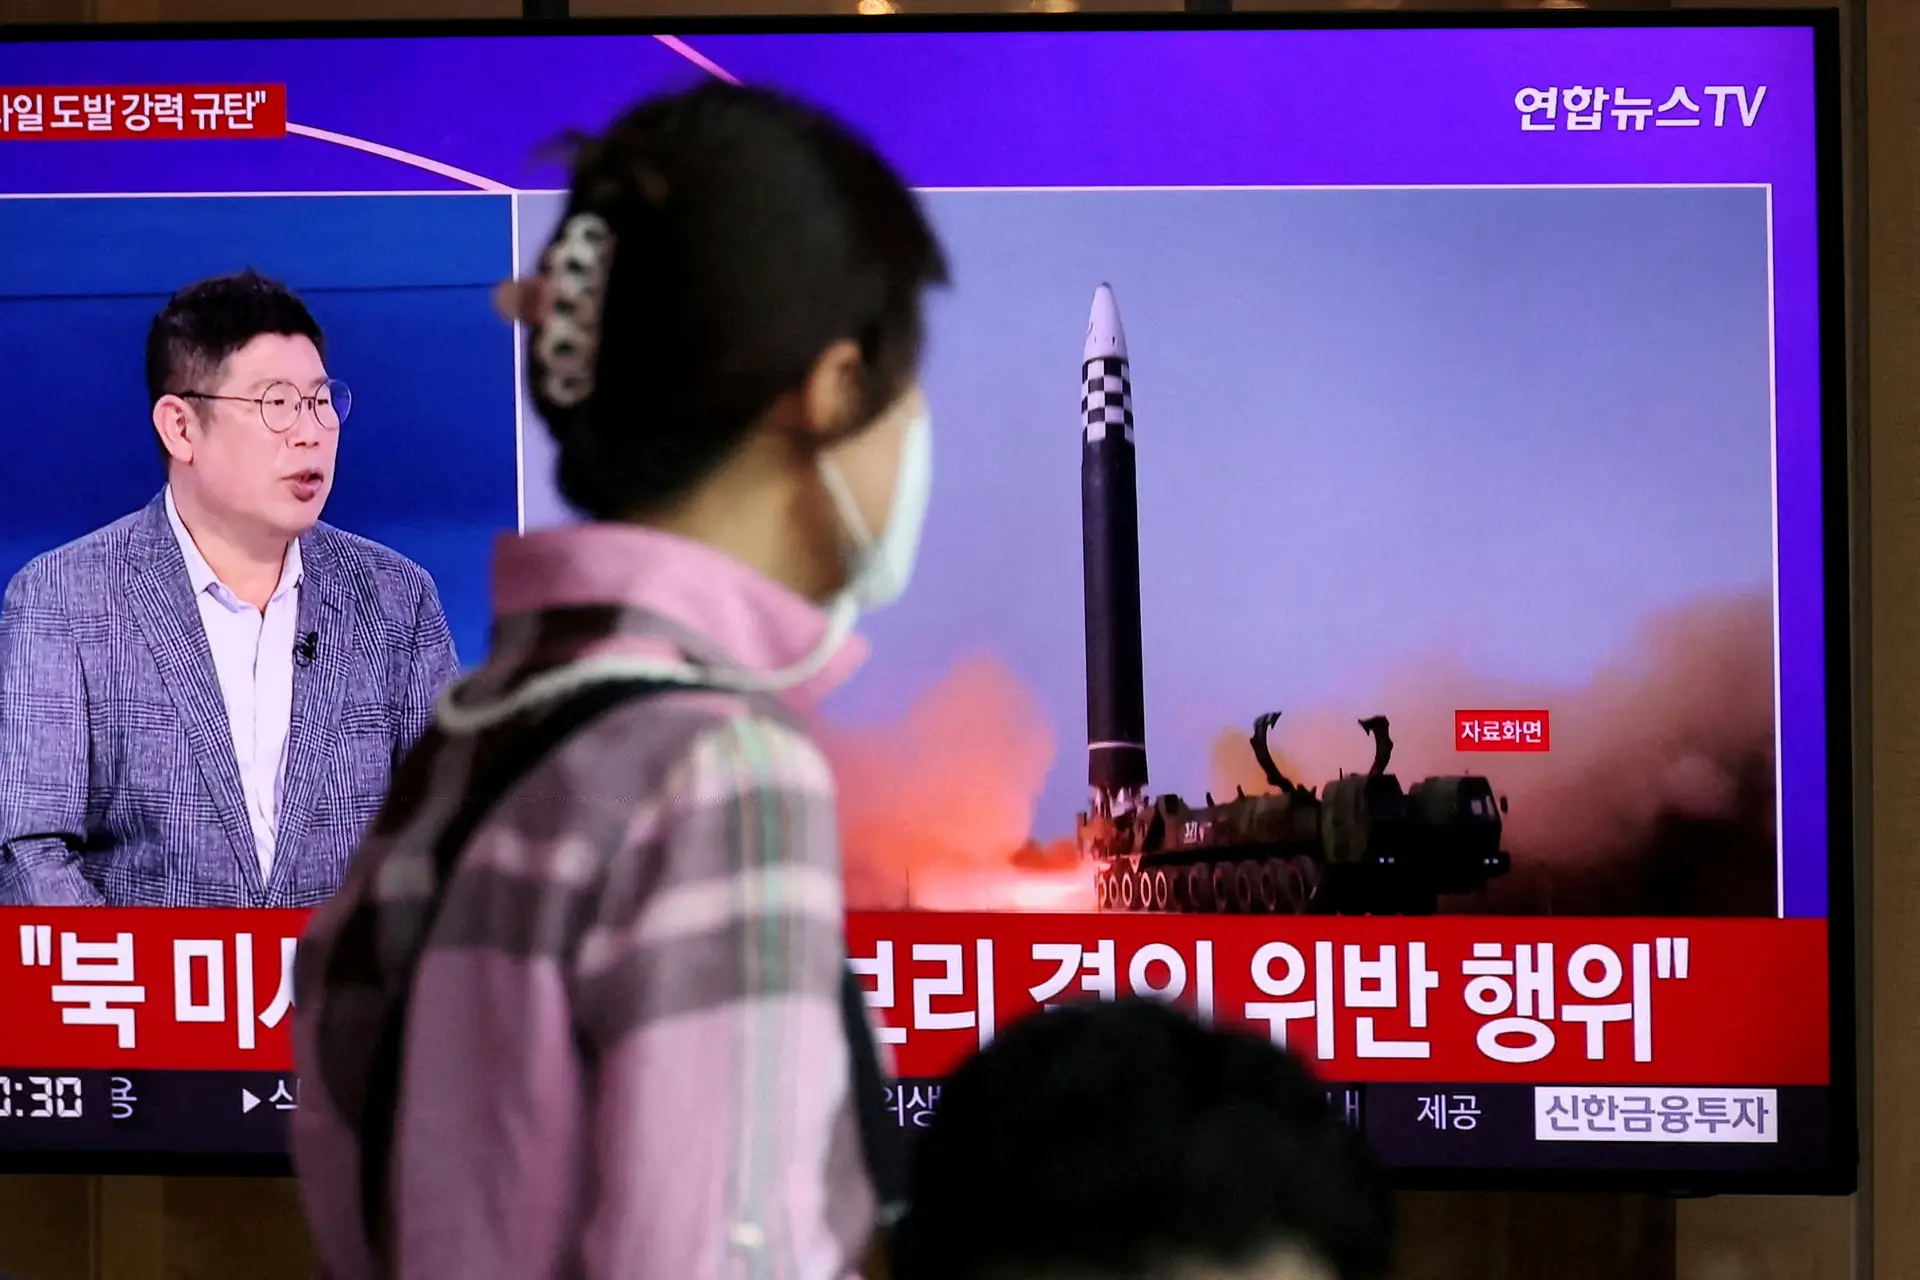 Coreia do Norte efetuou sétimo disparo de míssil em duas semanas